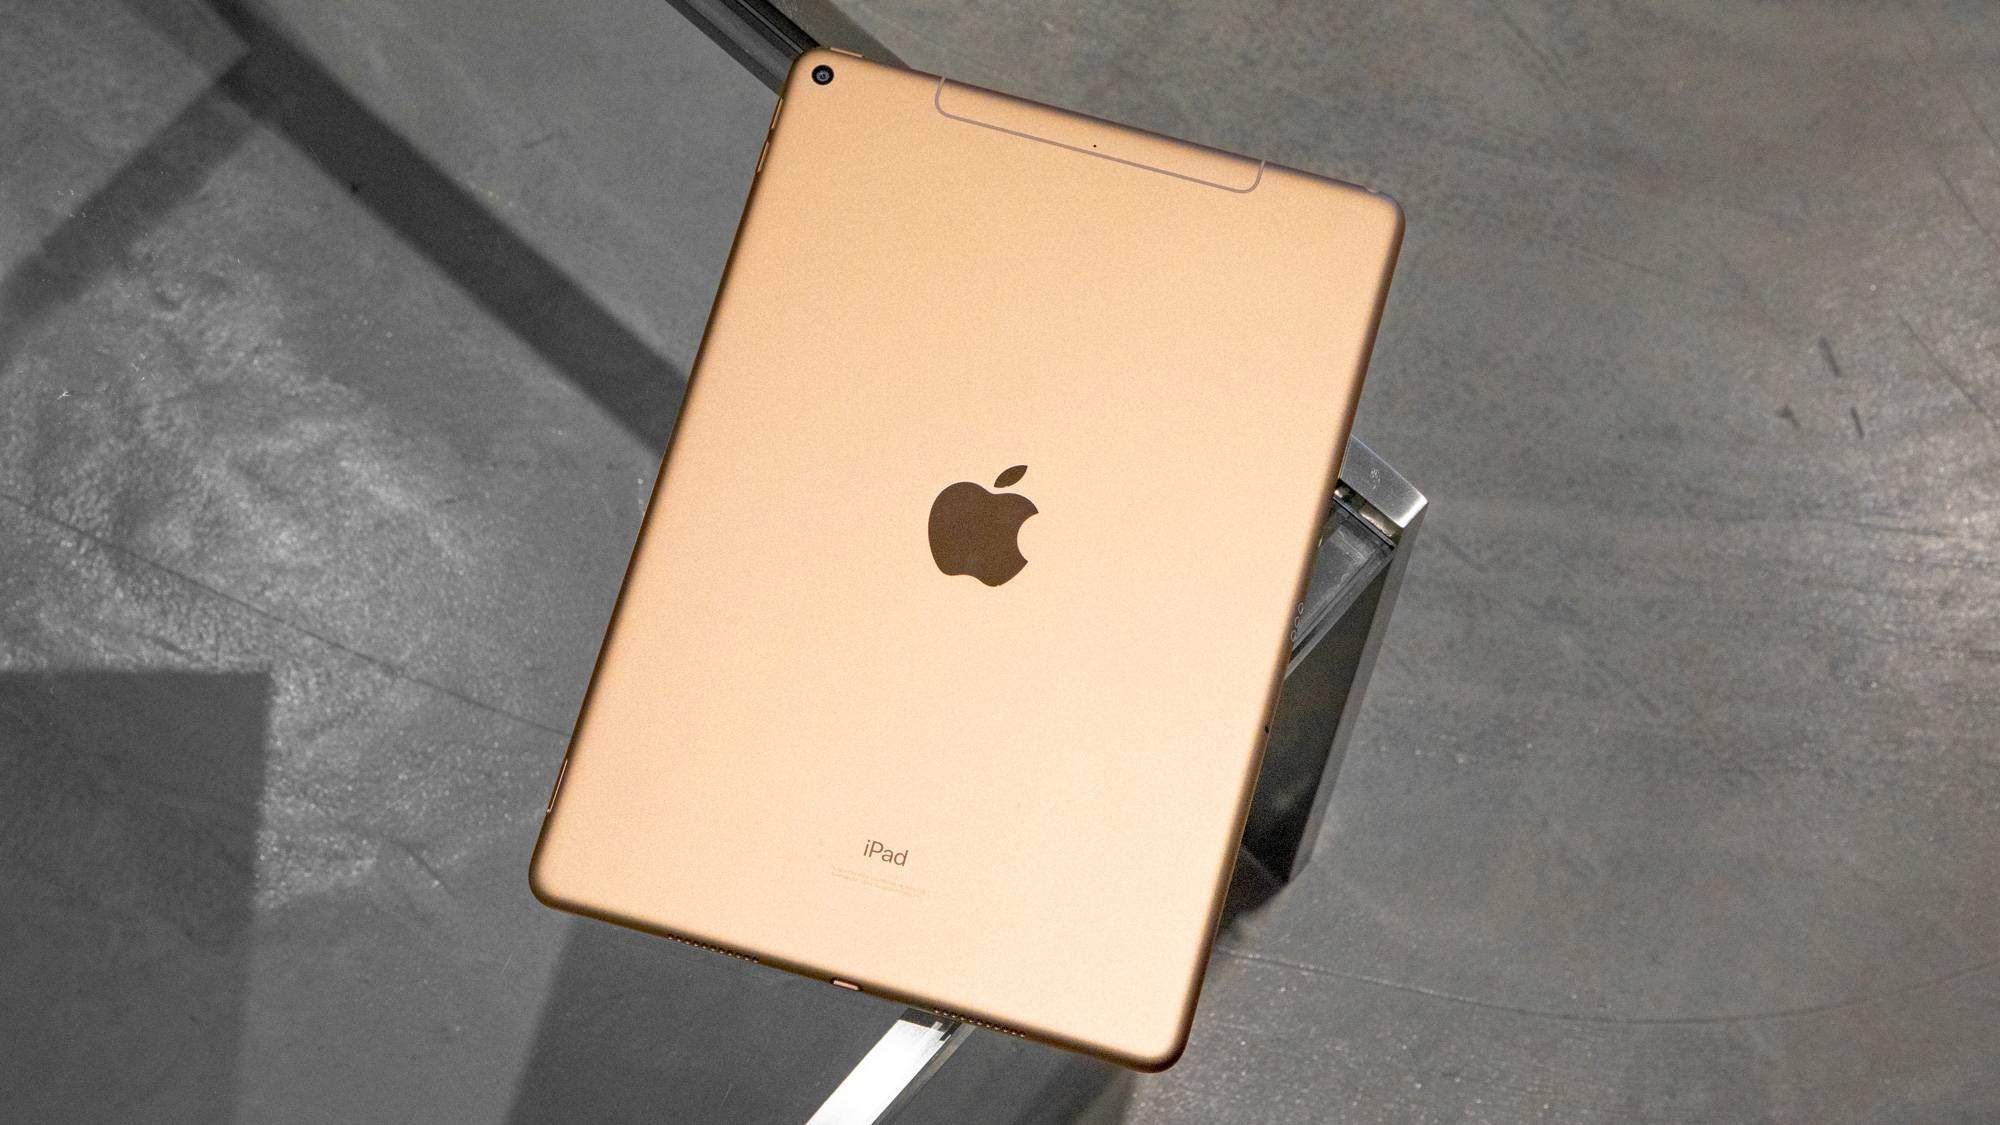 iPad Air 4 tanıtıldı. İşte özellikleri ve fiyatı